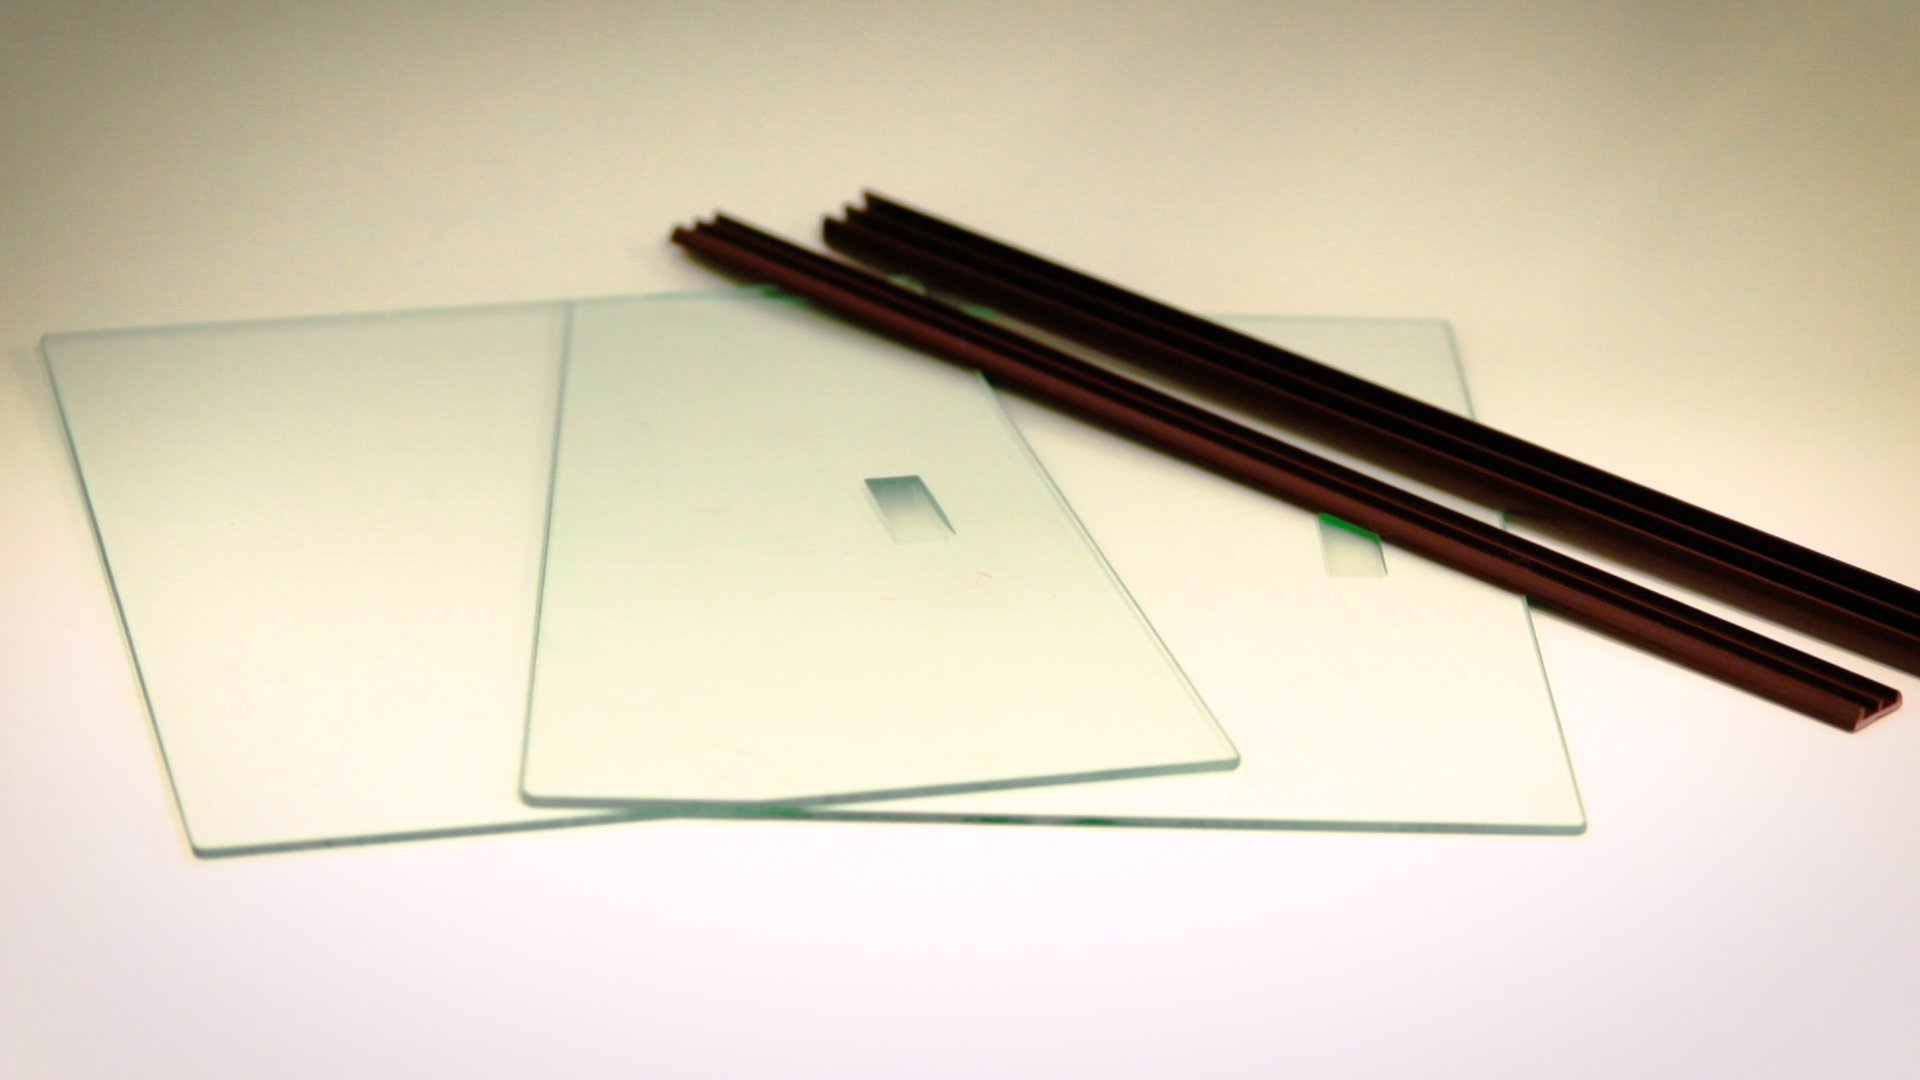 じか引き用ガラス引戸のガラスのみをサイズ指定して発注する方法 Kg Press ガラス情報発信メディア